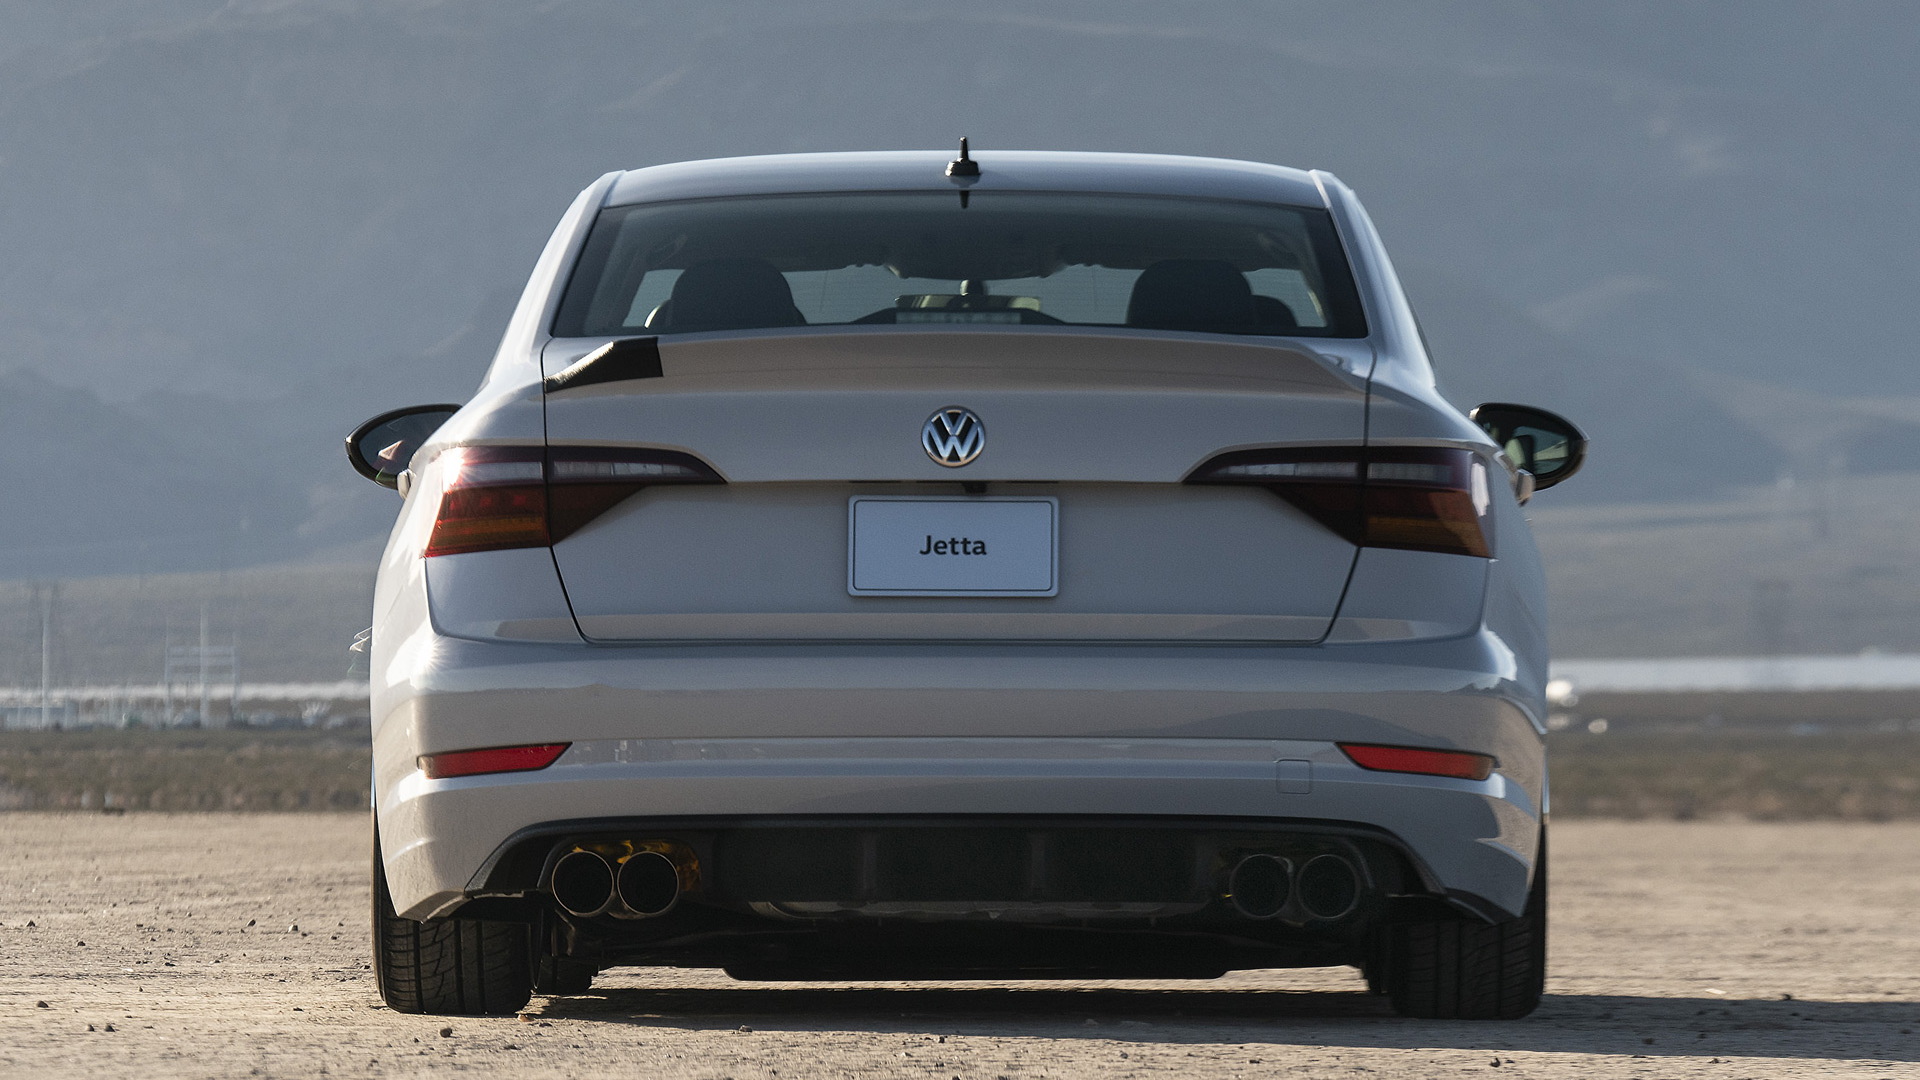 2019 Volkswagen Jetta S by Jamie Orr